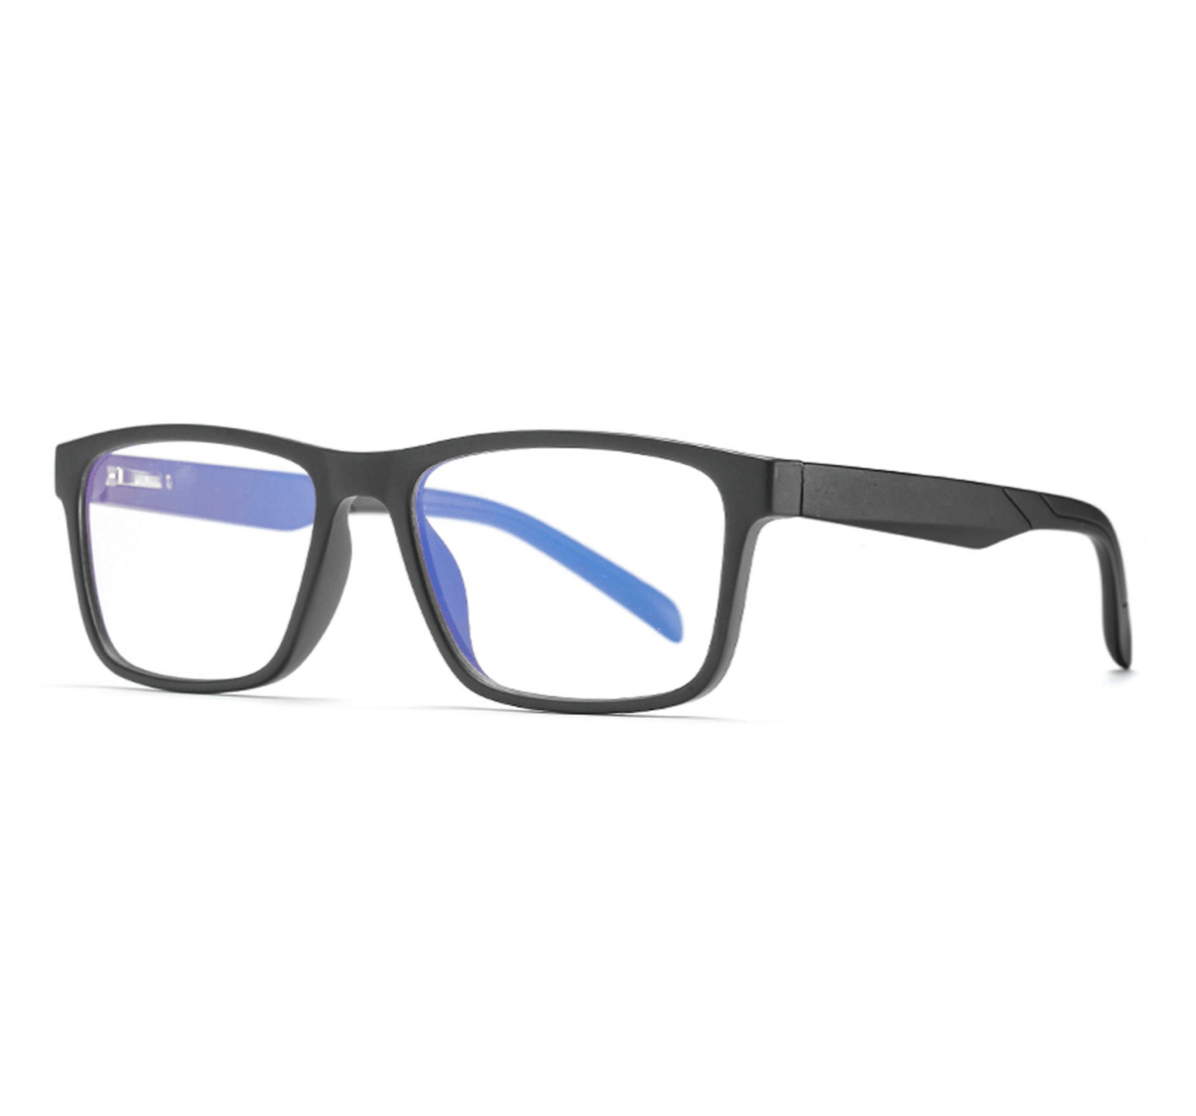 square TR90 blue light glasses manufacturer, blue light glasses supplier, blue light glasses bulk, blue light glasses china, custom blue light glasses, Where to buy blue light glasses